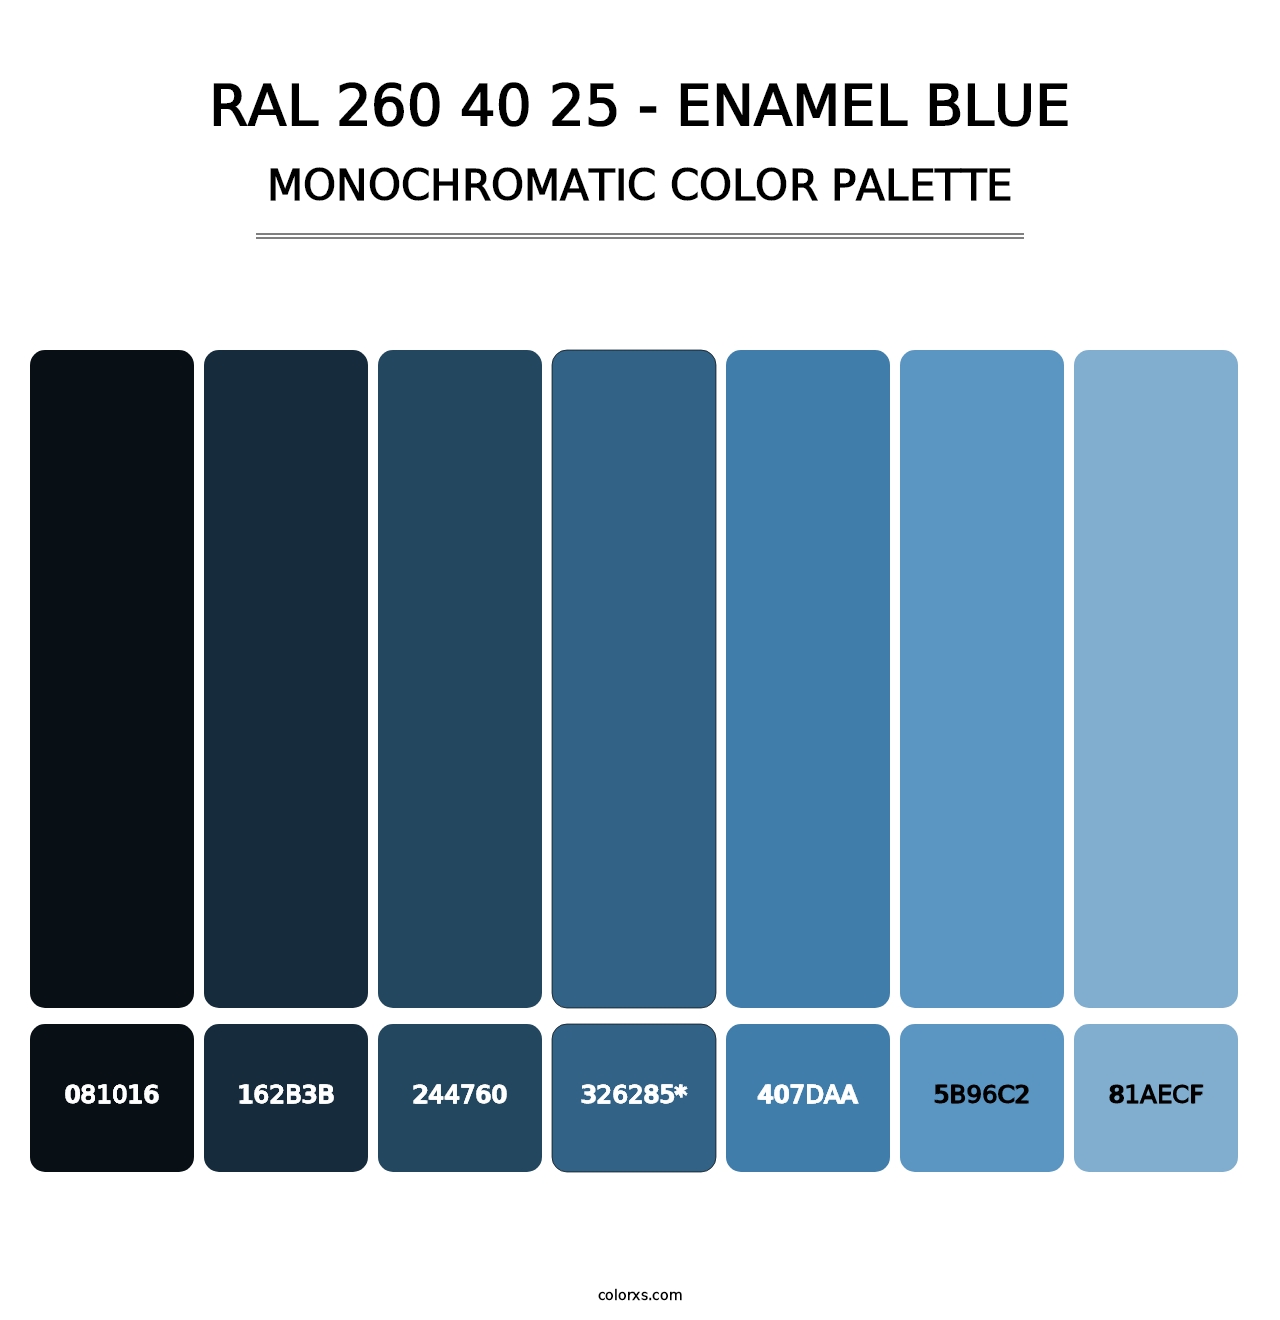 RAL 260 40 25 - Enamel Blue - Monochromatic Color Palette